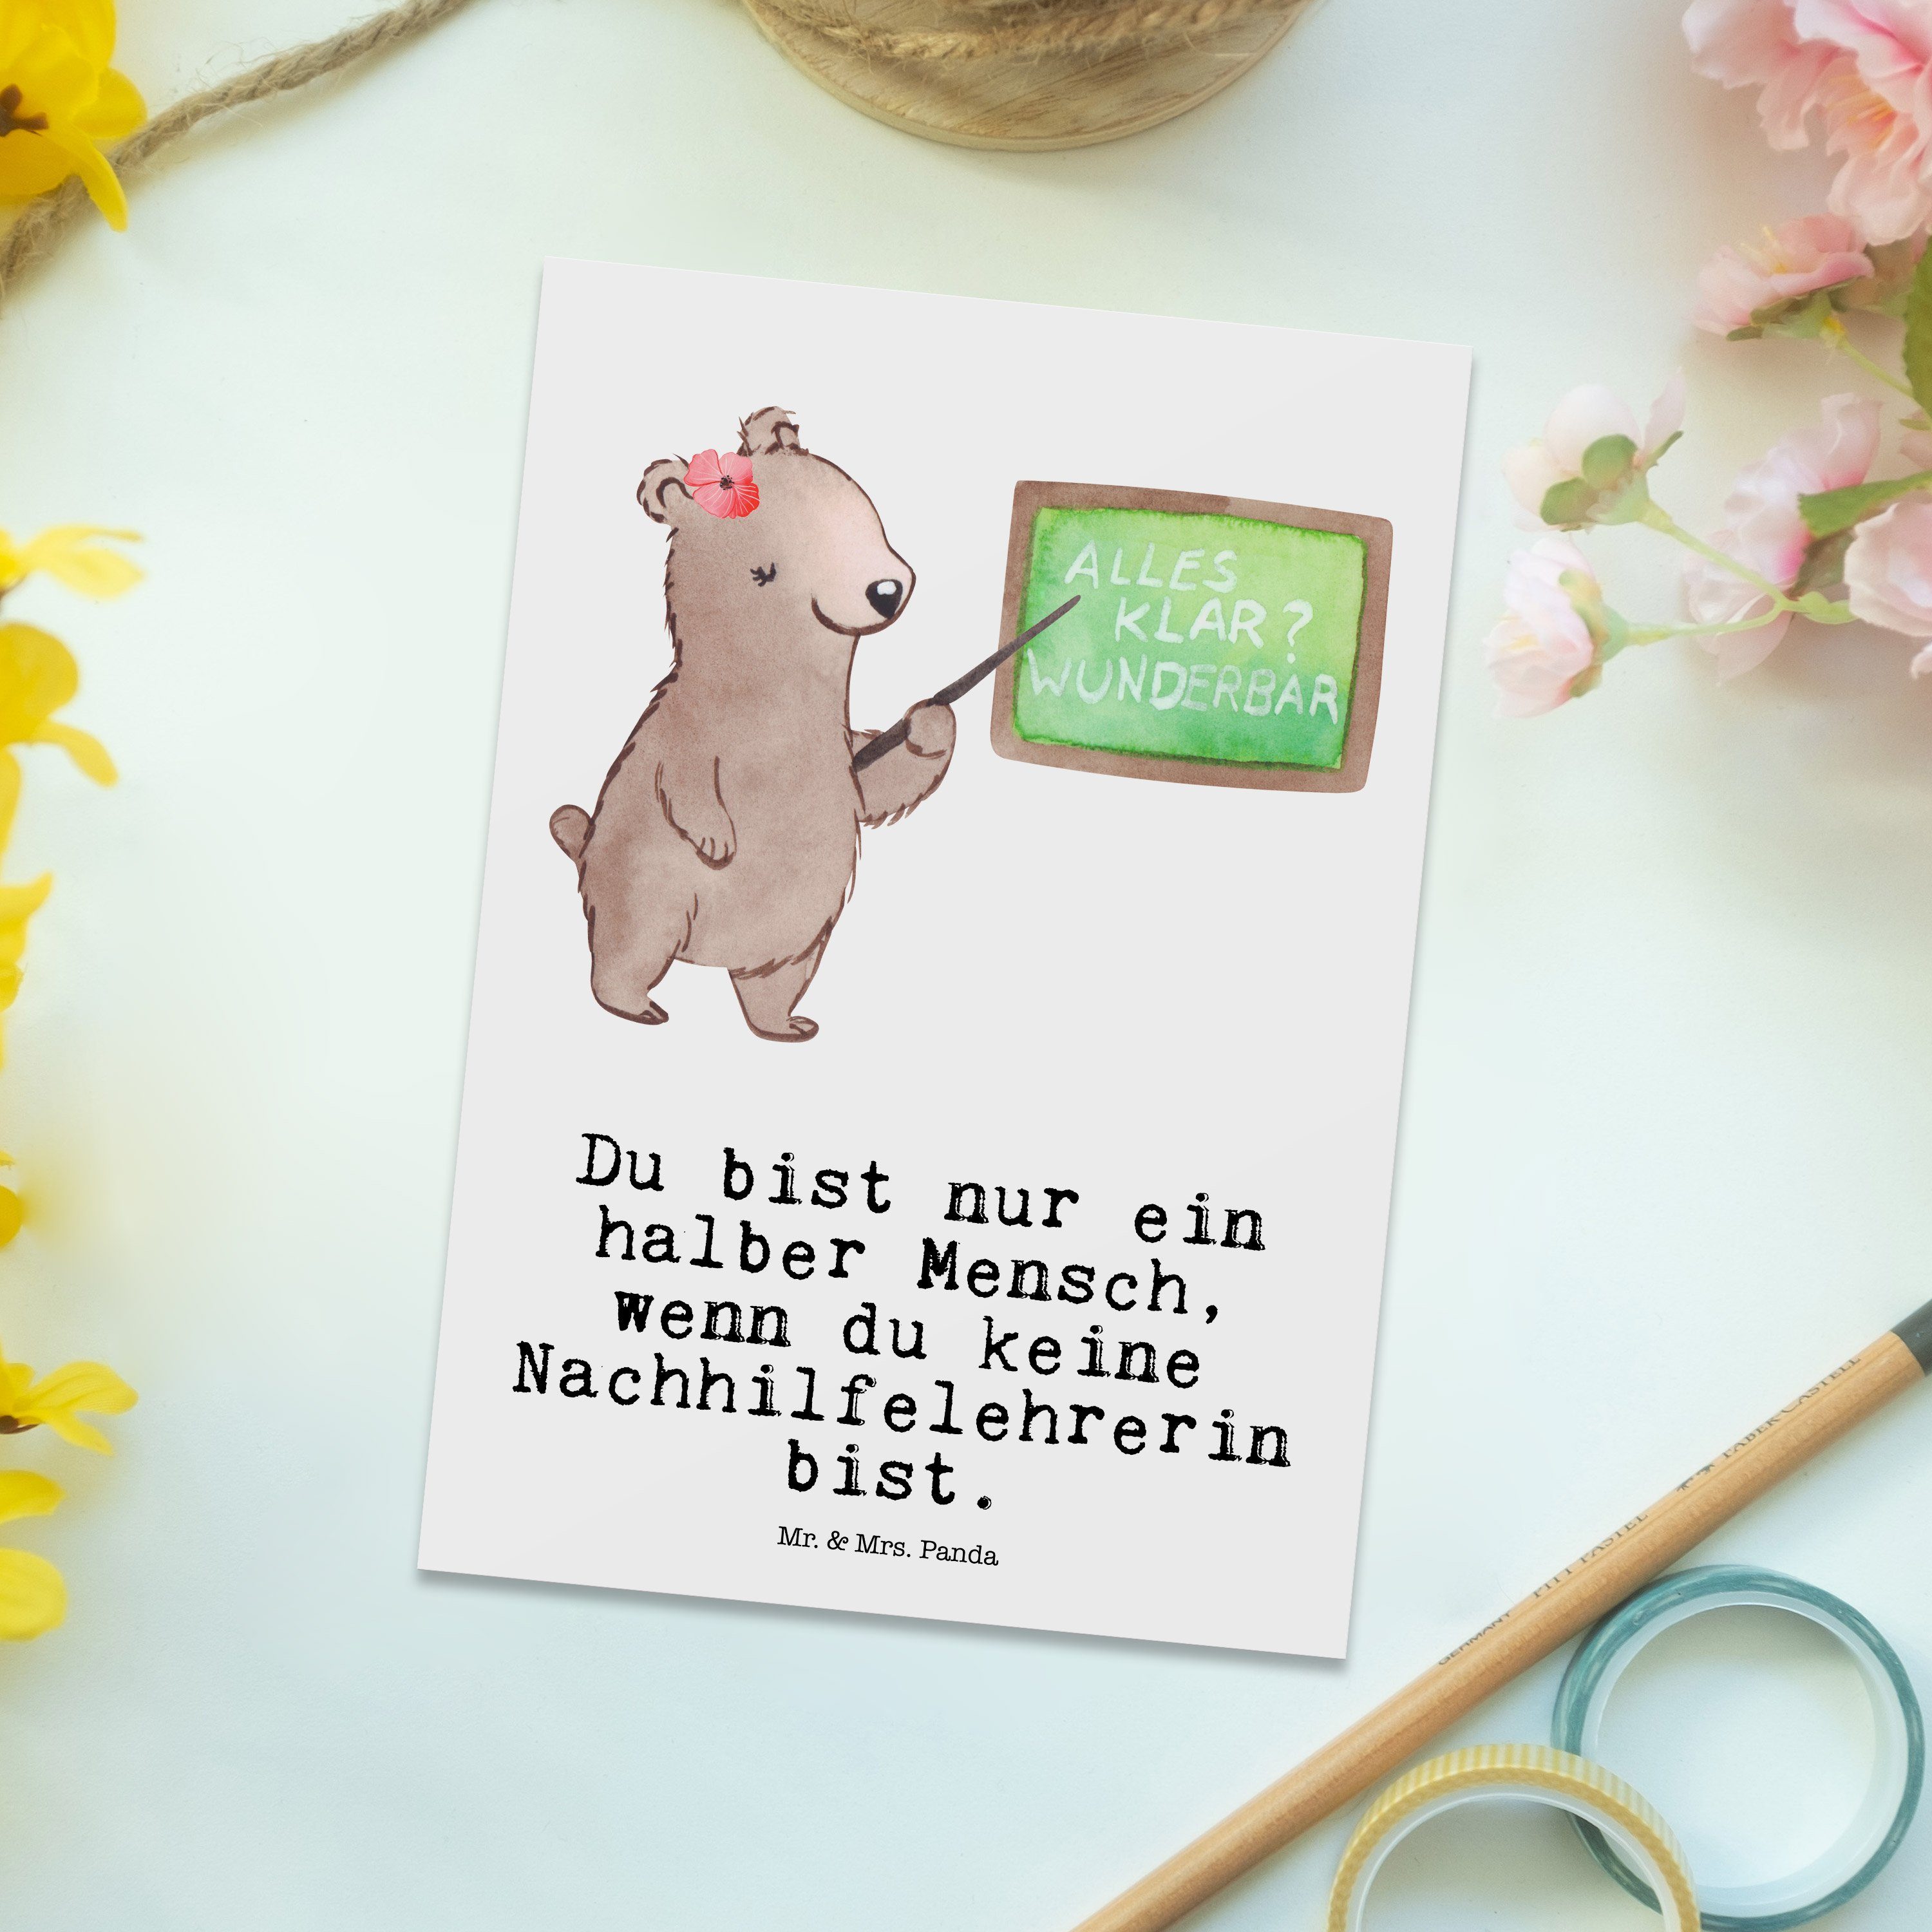 Mr. & Mrs. Panda Postkarte mit Weiß - Geschenk, Nachhilfelehrerin - Grußka Herz Nachhilfeschule